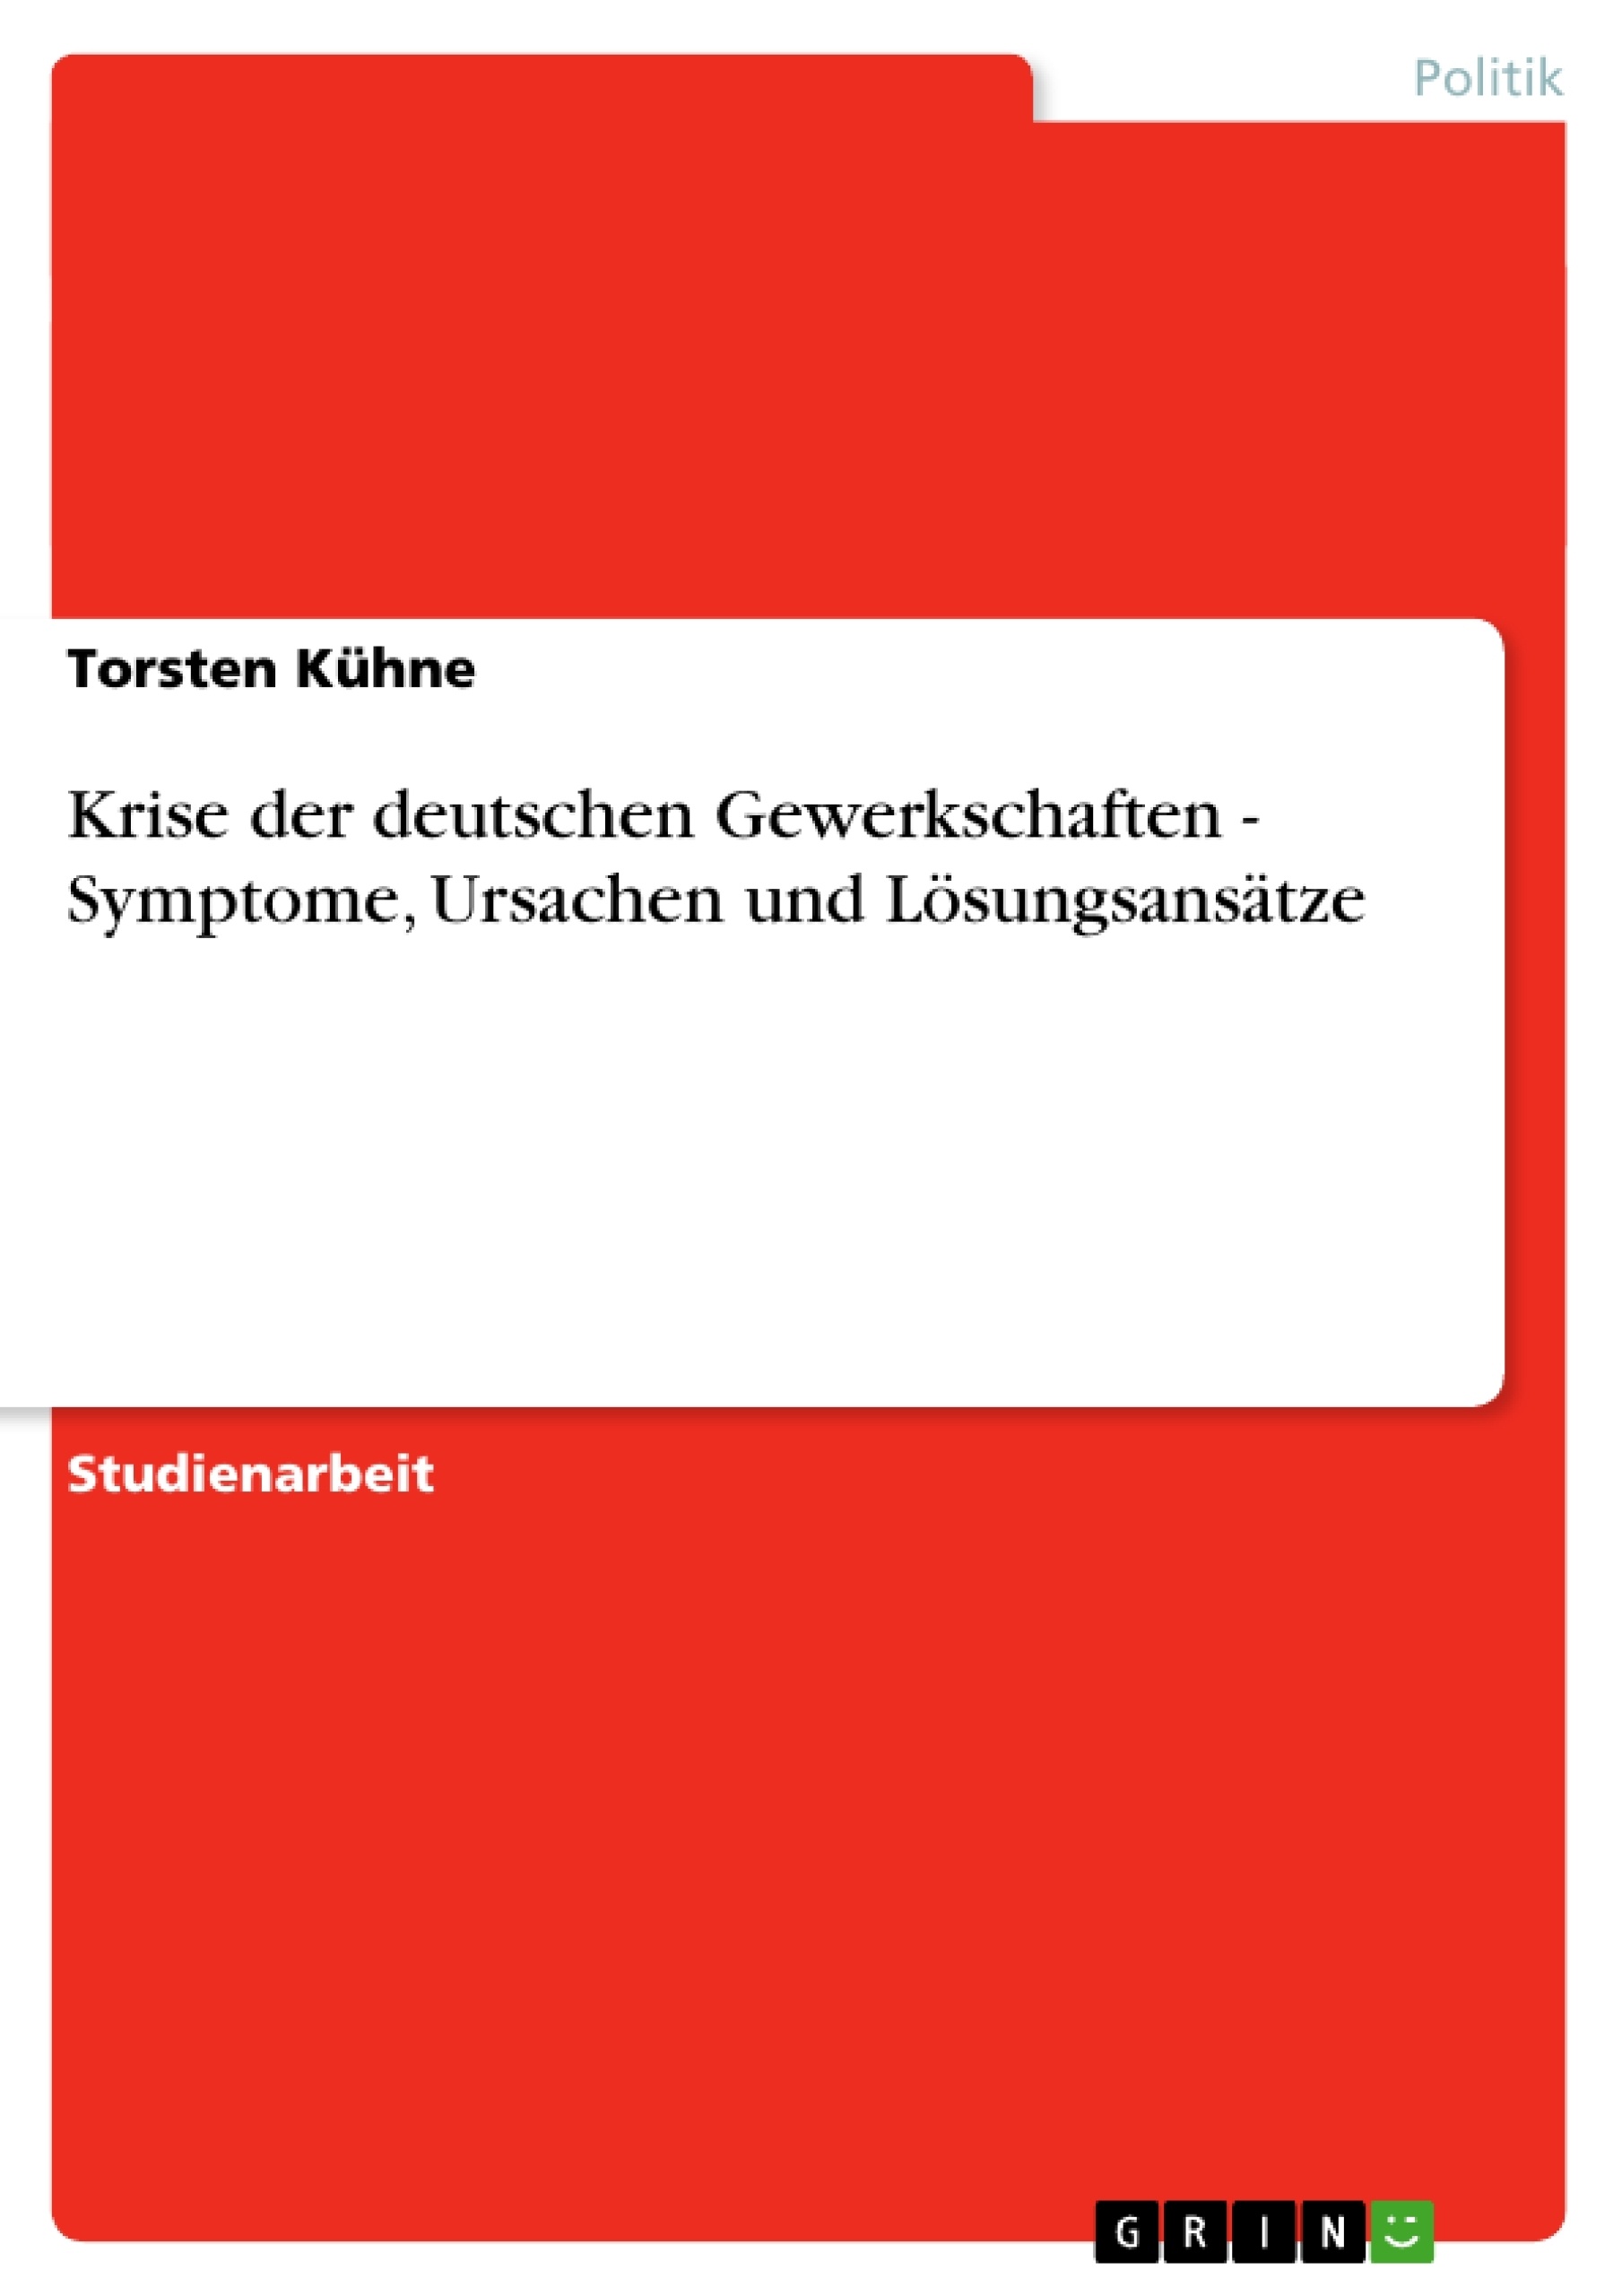 Título: Krise der deutschen Gewerkschaften - Symptome, Ursachen und Lösungsansätze